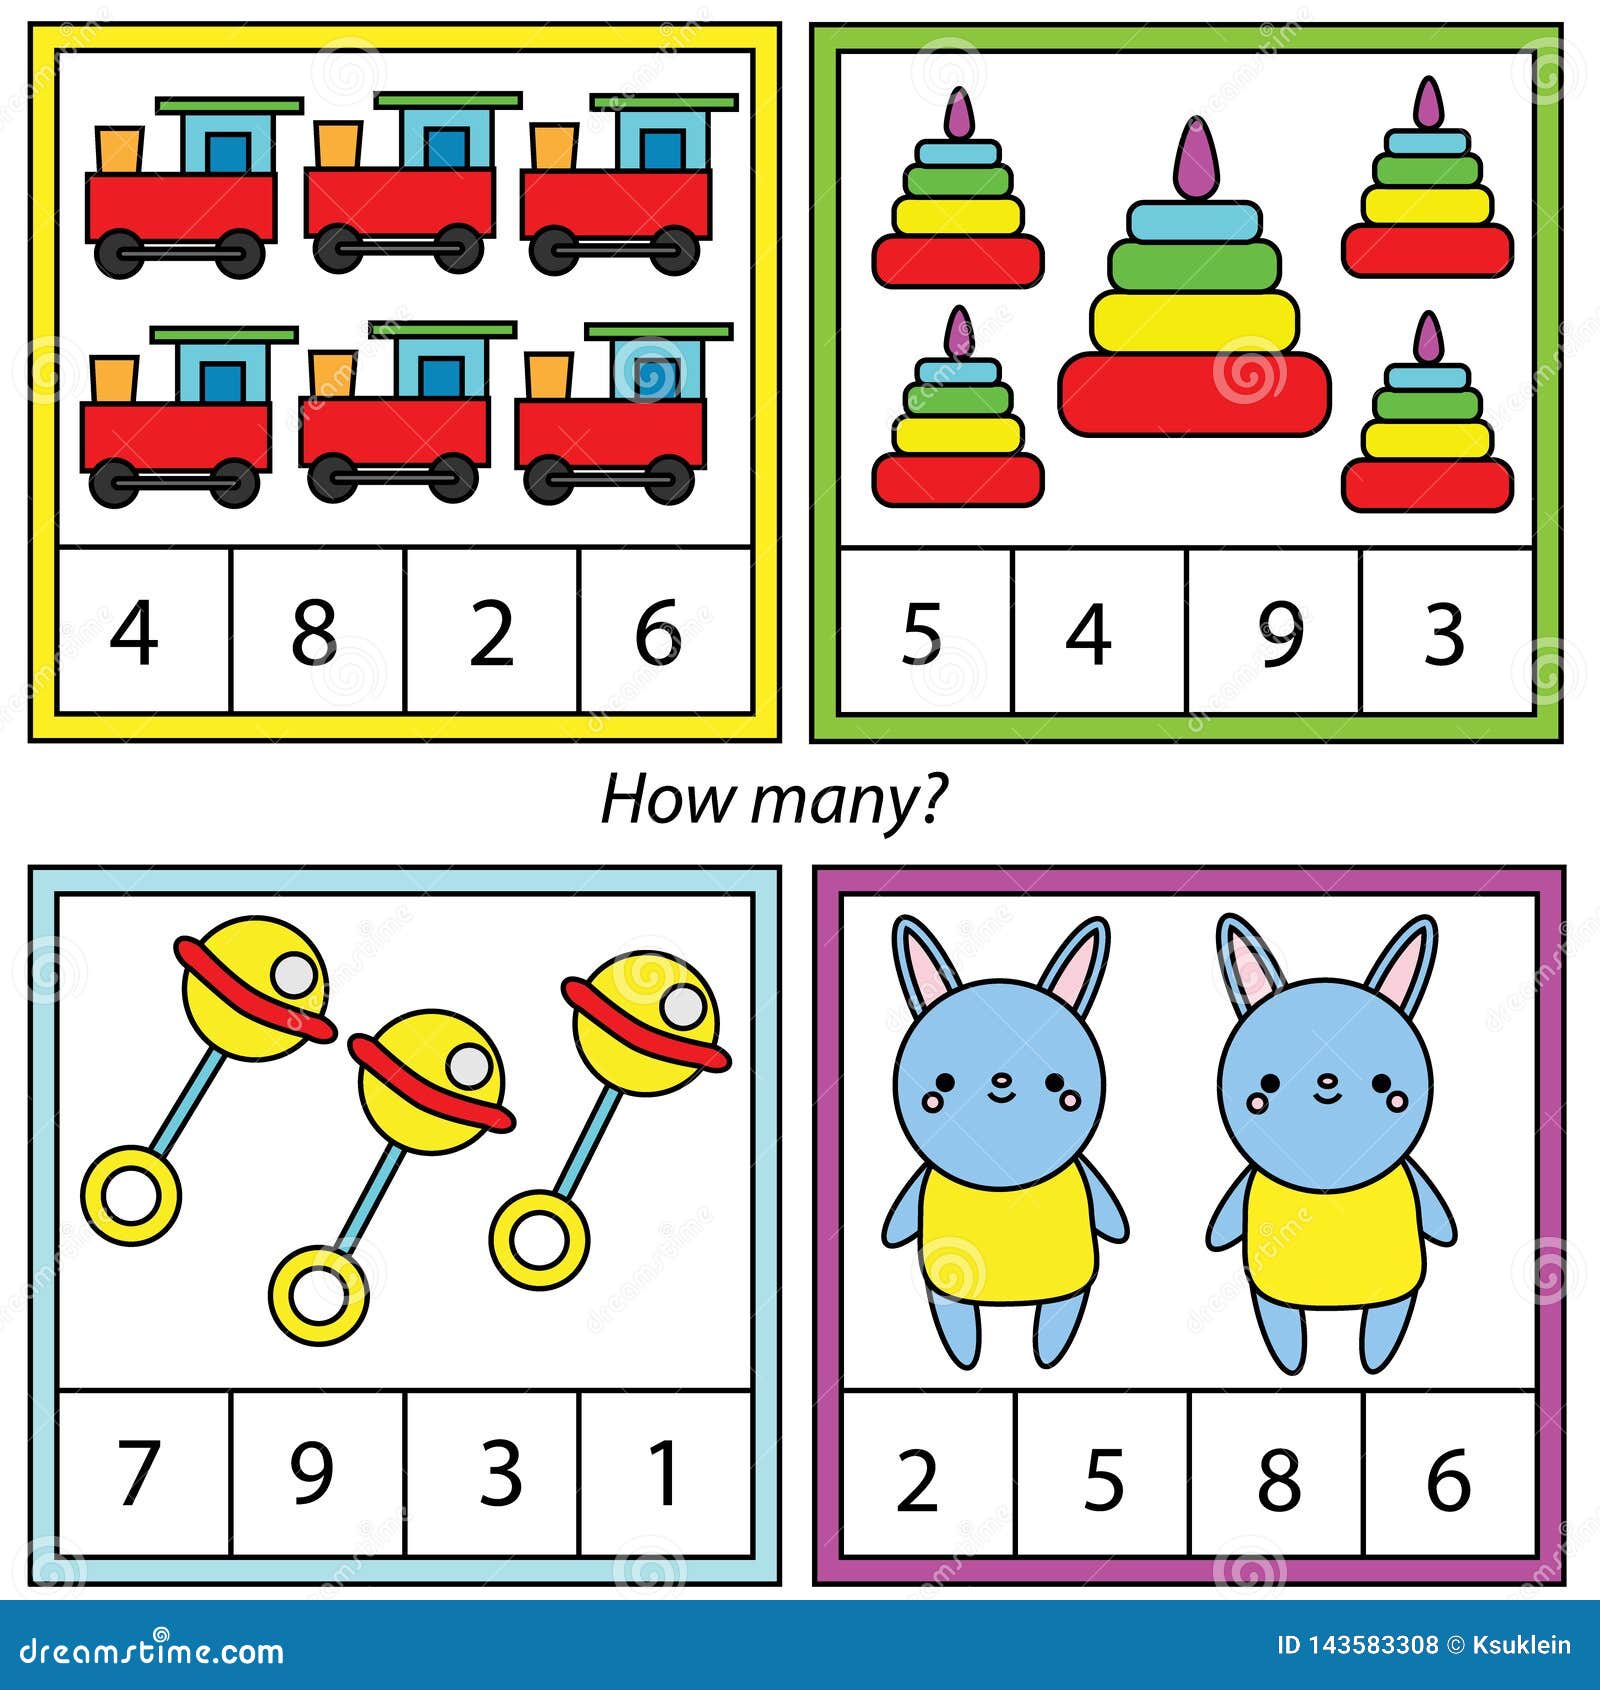 jogo de matemática infantil, conte quantos deles. Brinquedos infantis  6815640 Vetor no Vecteezy